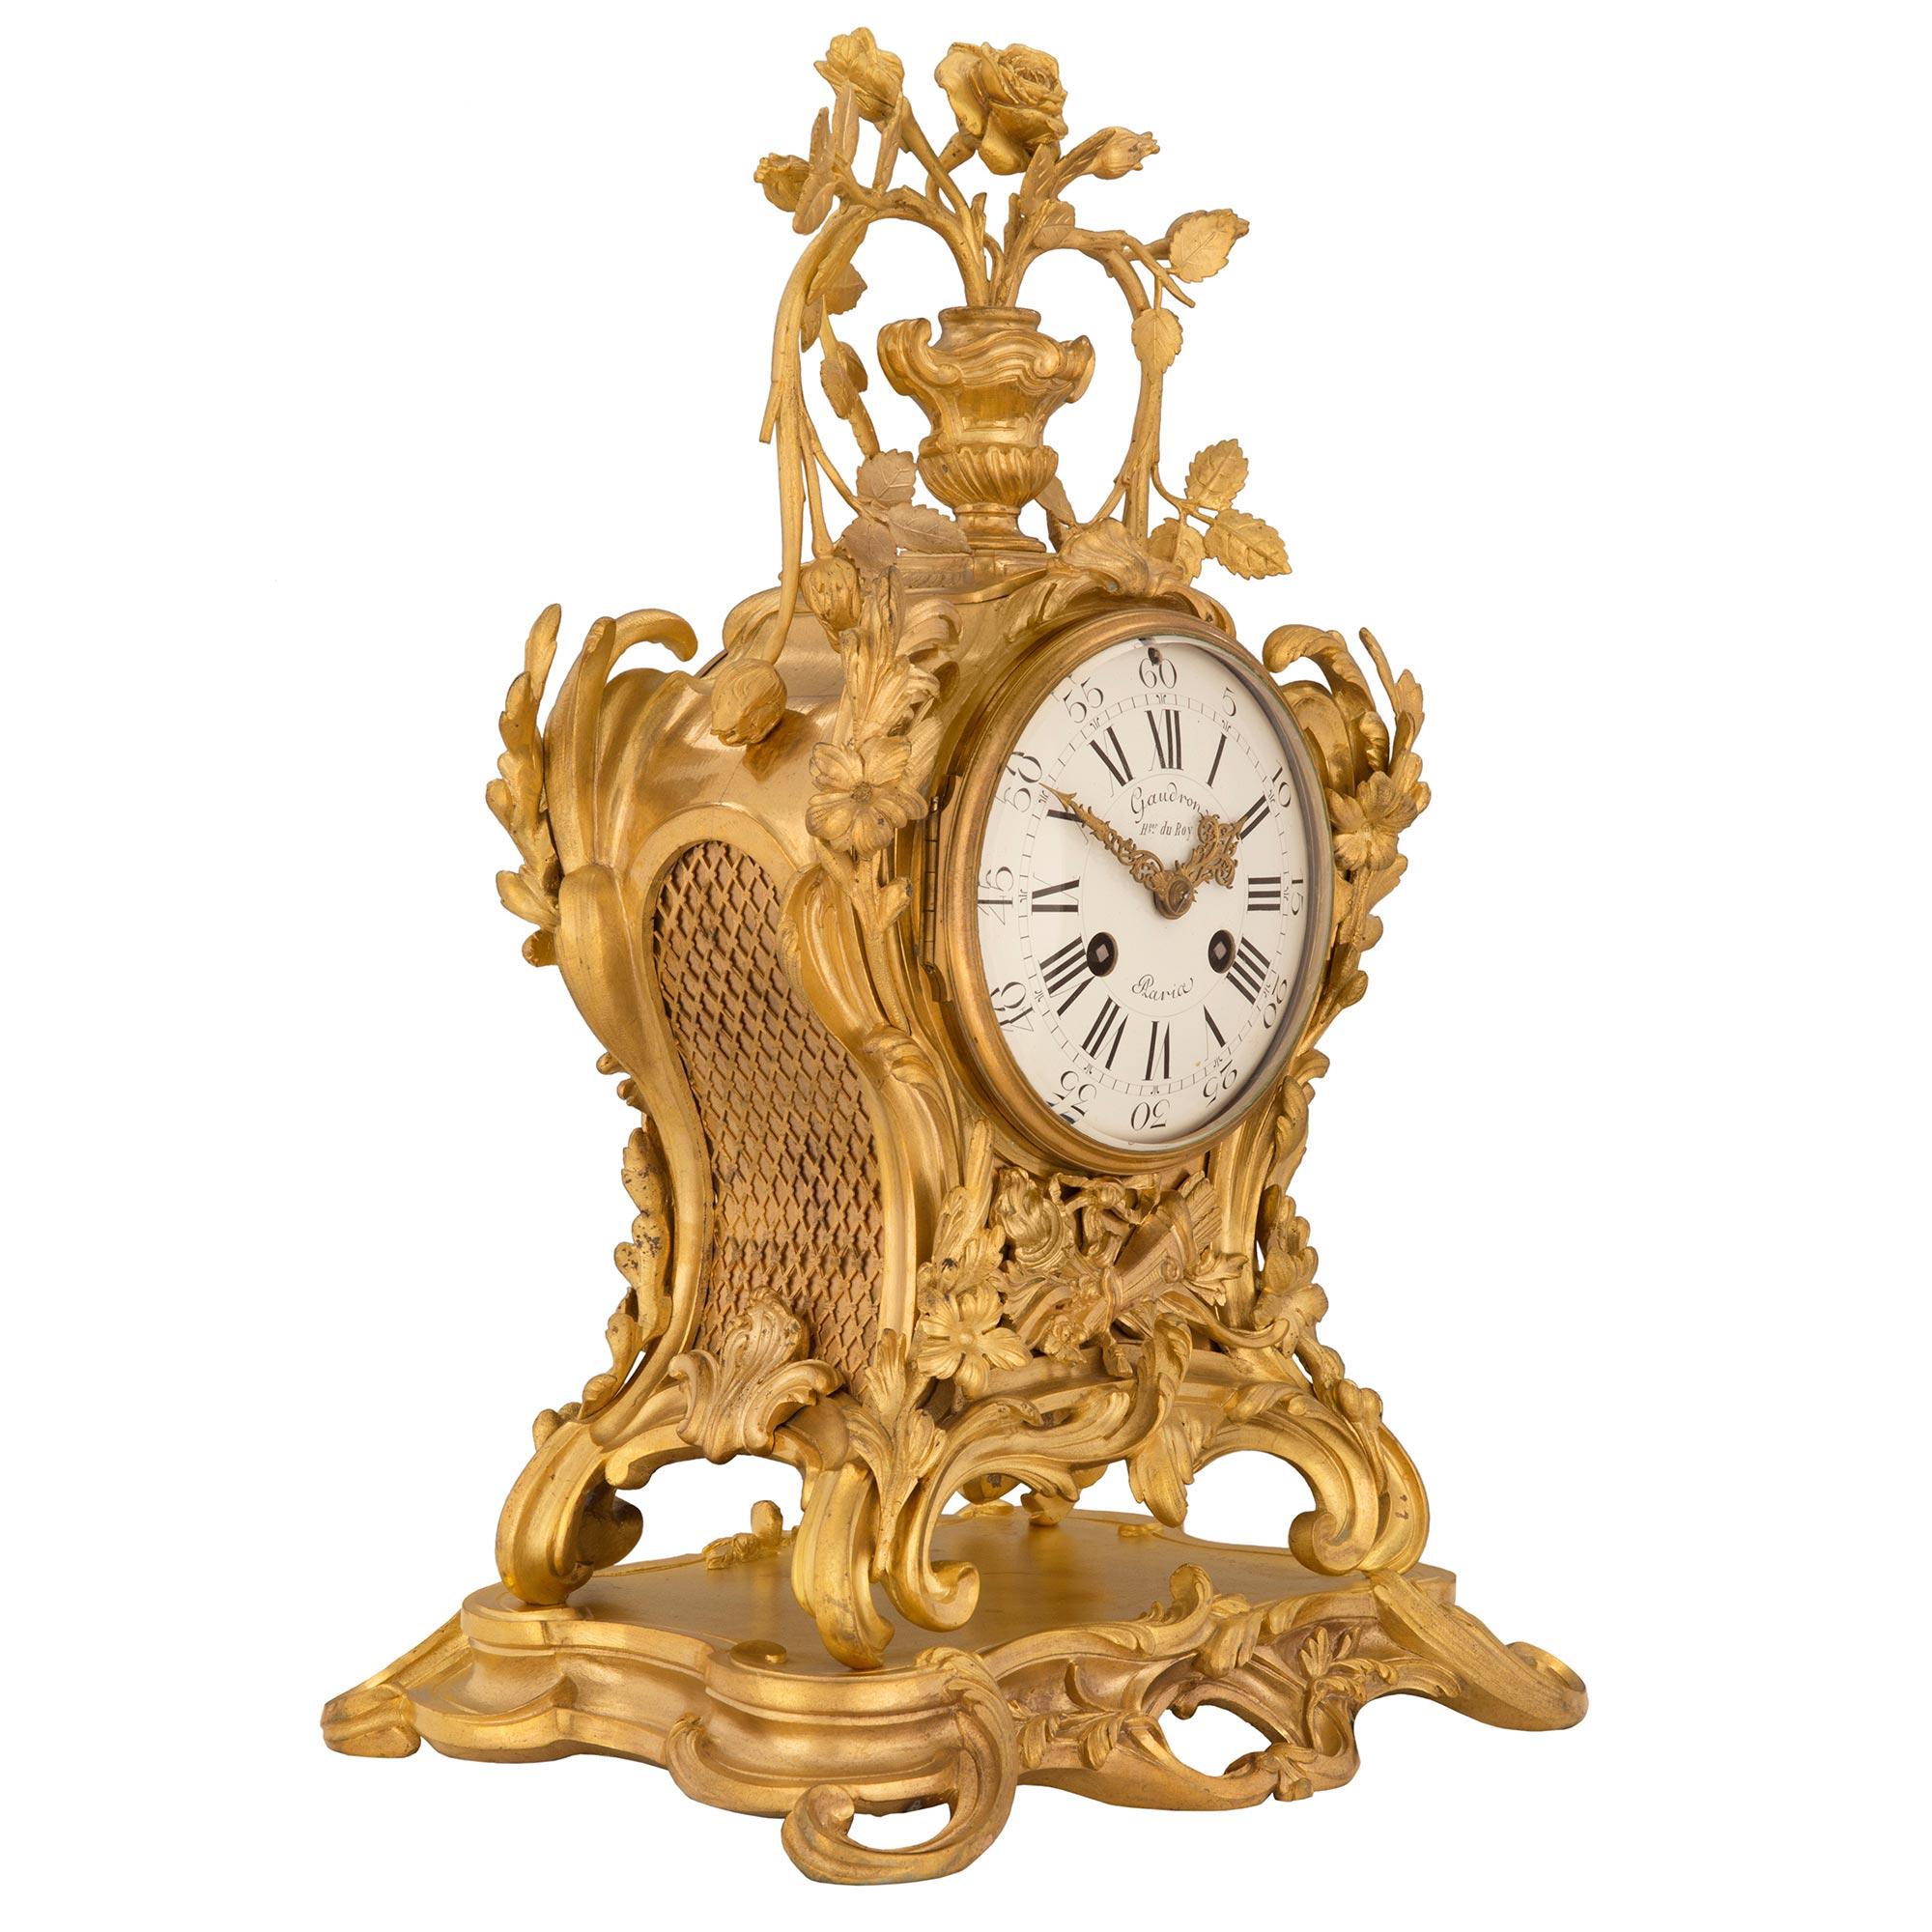 Superbe pendule en bronze doré d'époque Louis XV du début du XVIIIe siècle, signée Gaudron du Roy, Paris. La pendule repose sur une base en bronze doré avec des mouvements à volutes luxuriantes. Sous le cadran et au centre de l'horloge se trouve une